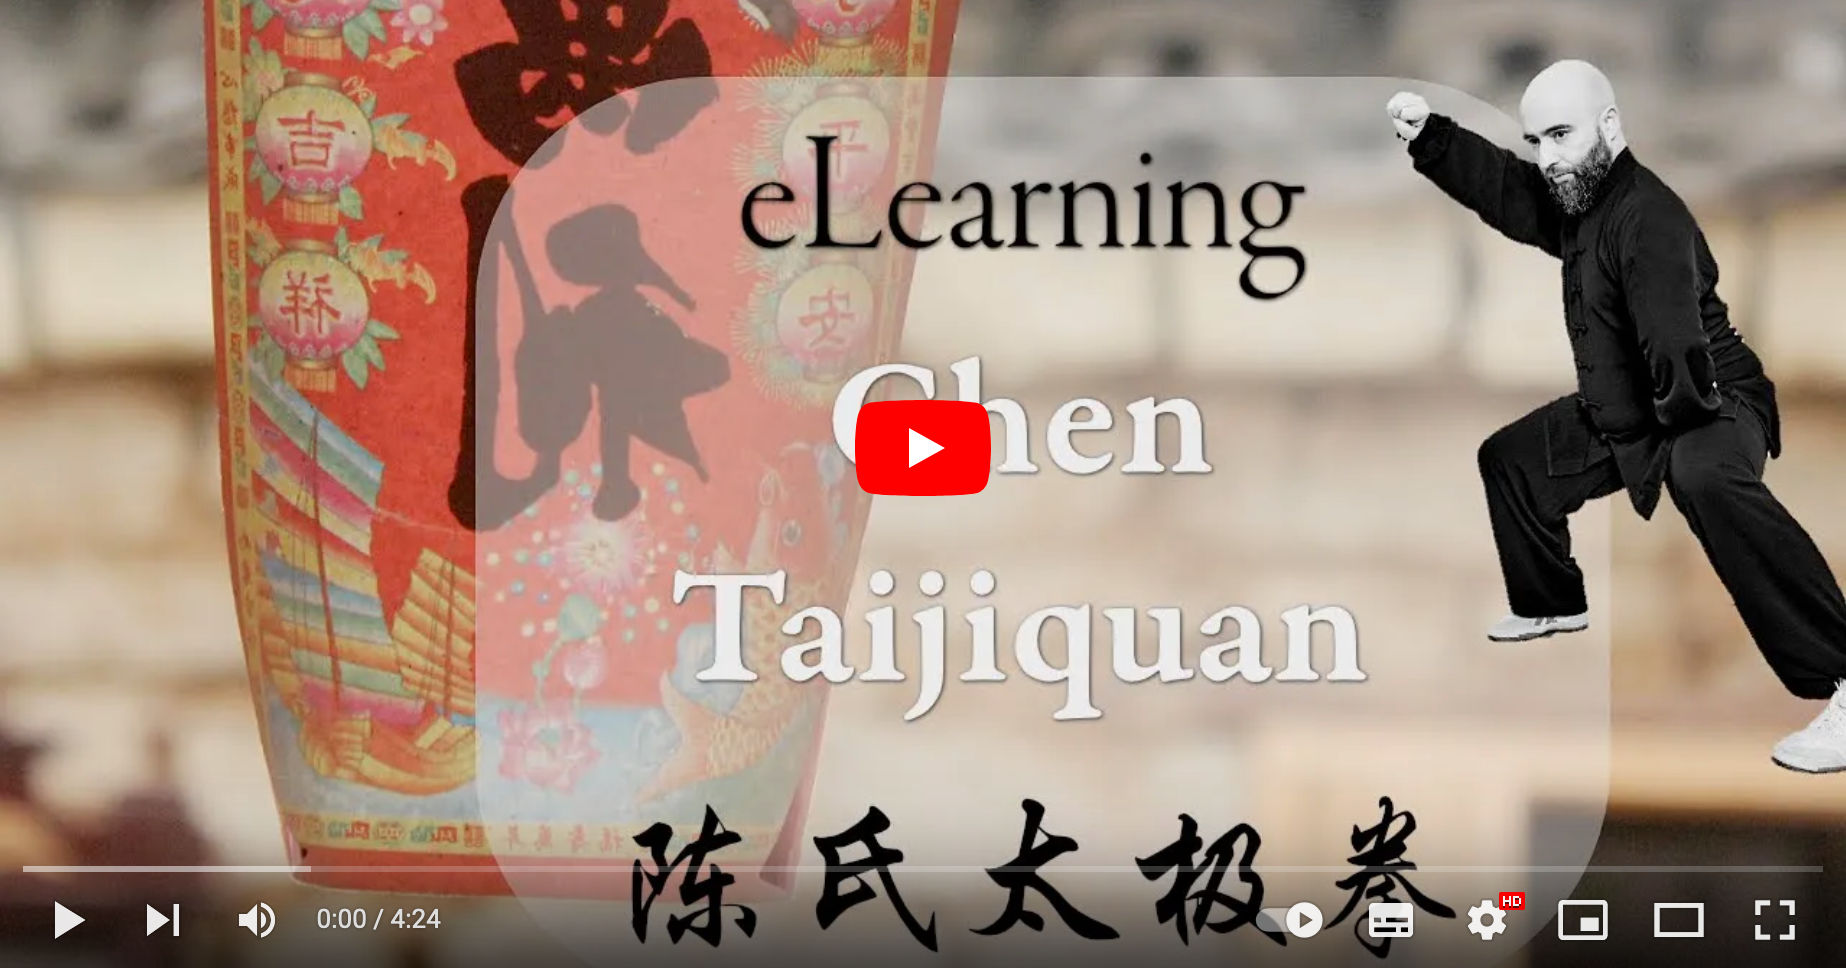 eLearning Chen Taijiquan